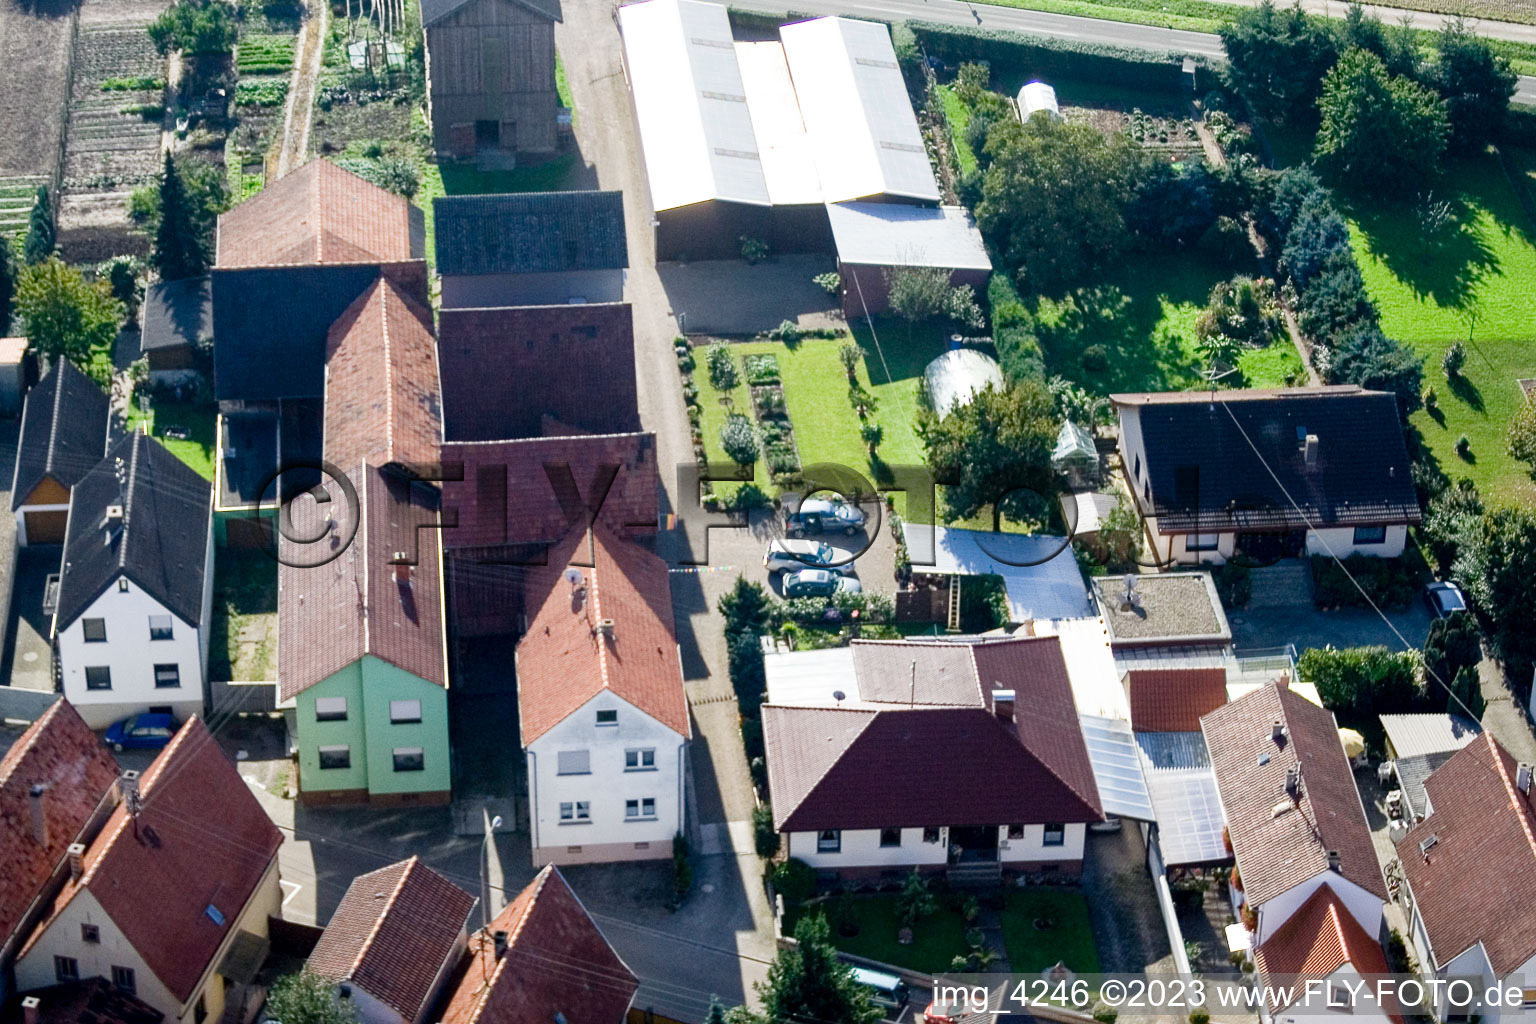 Brehmstr à le quartier Minderslachen in Kandel dans le département Rhénanie-Palatinat, Allemagne du point de vue du drone